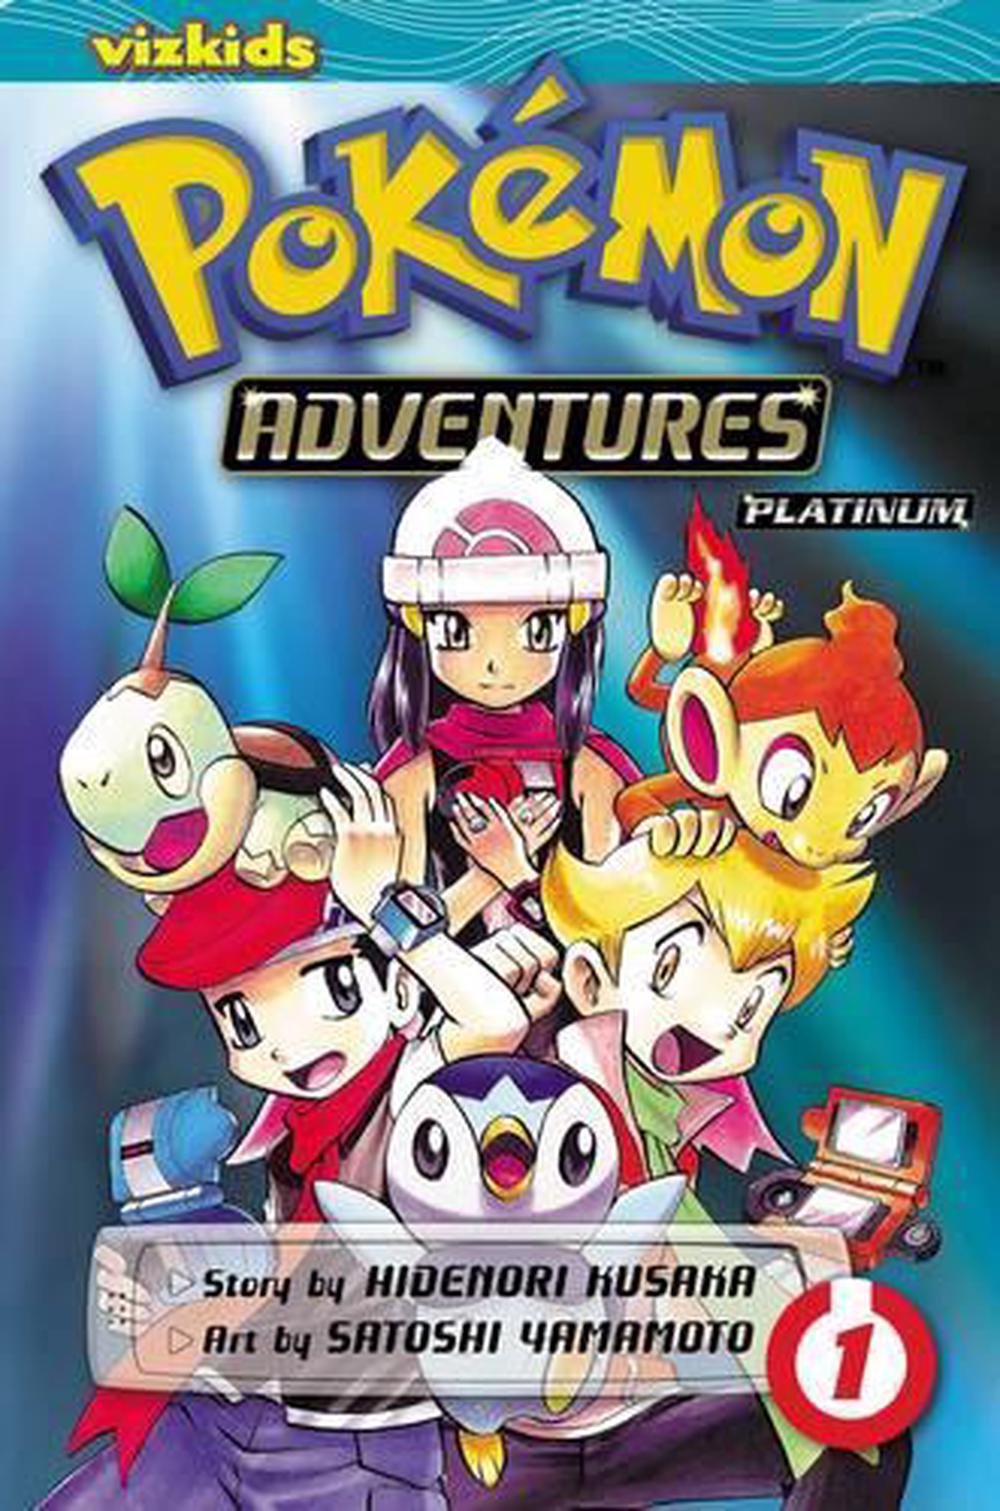 Pokémon Adventures, Vol. 1 by Hidenori Kusaka